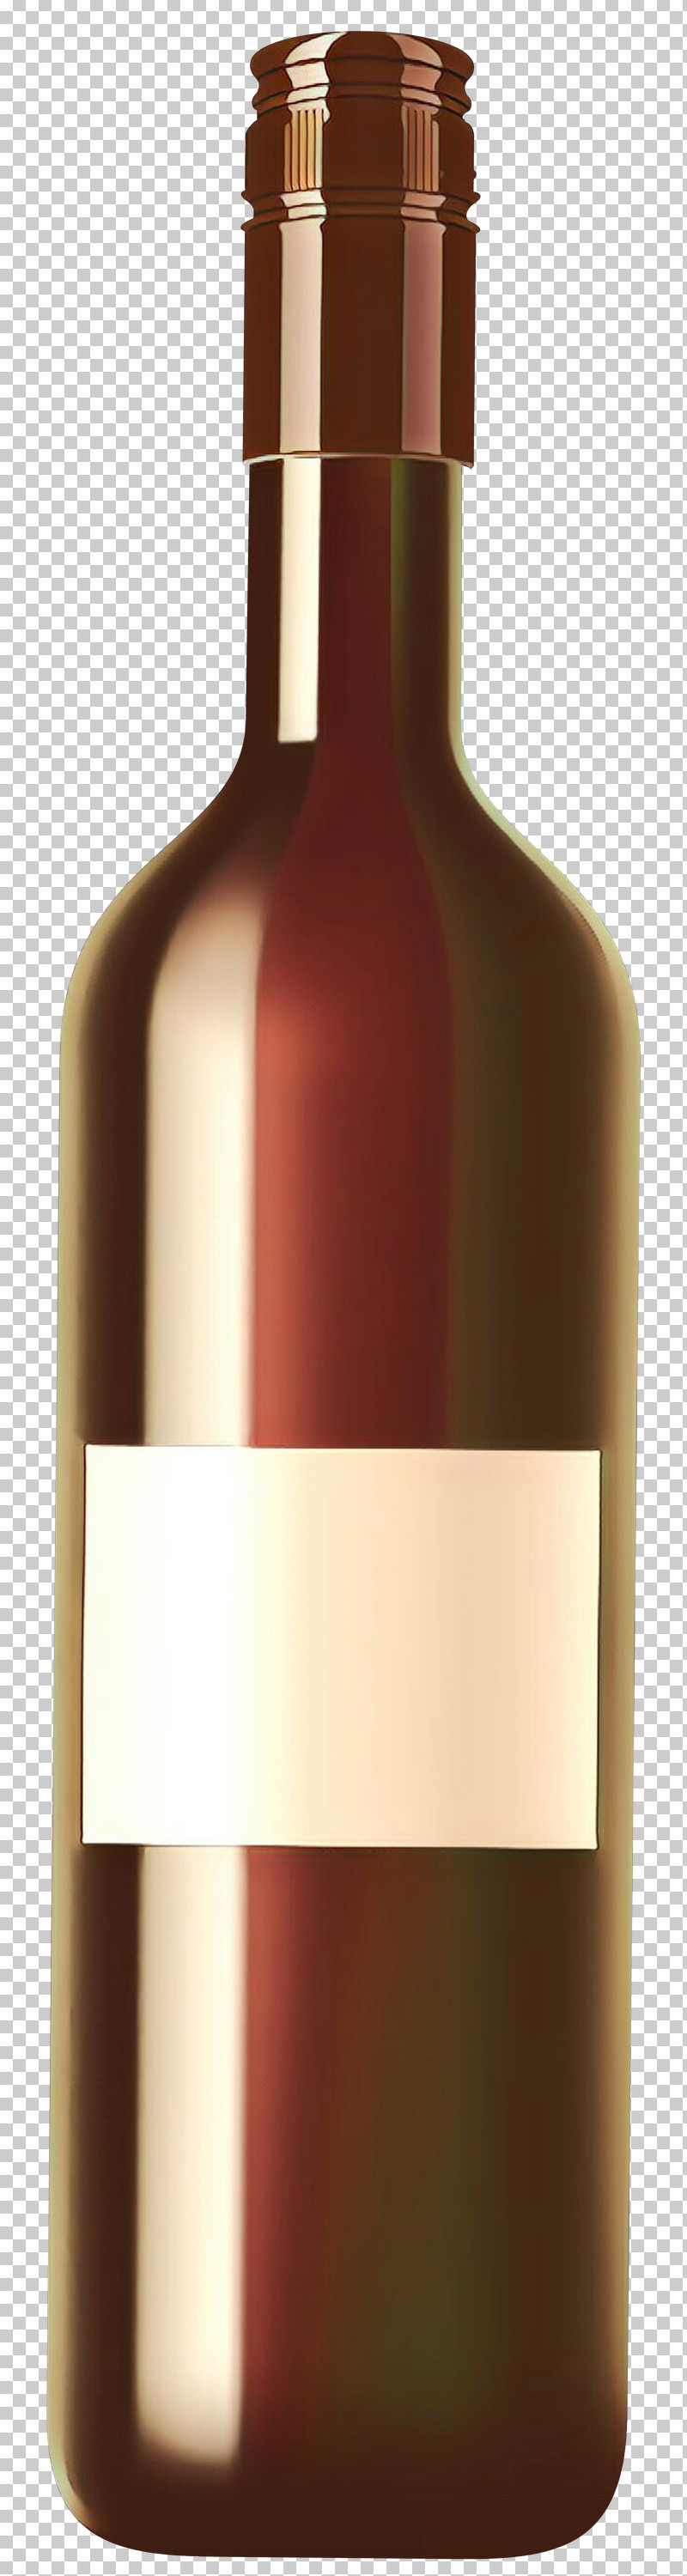 Bottle Wine Bottle Liqueur Glass Bottle Drink PNG, Clipart, Alcohol, Bottle, Dessert Wine, Distilled Beverage, Drink Free PNG Download